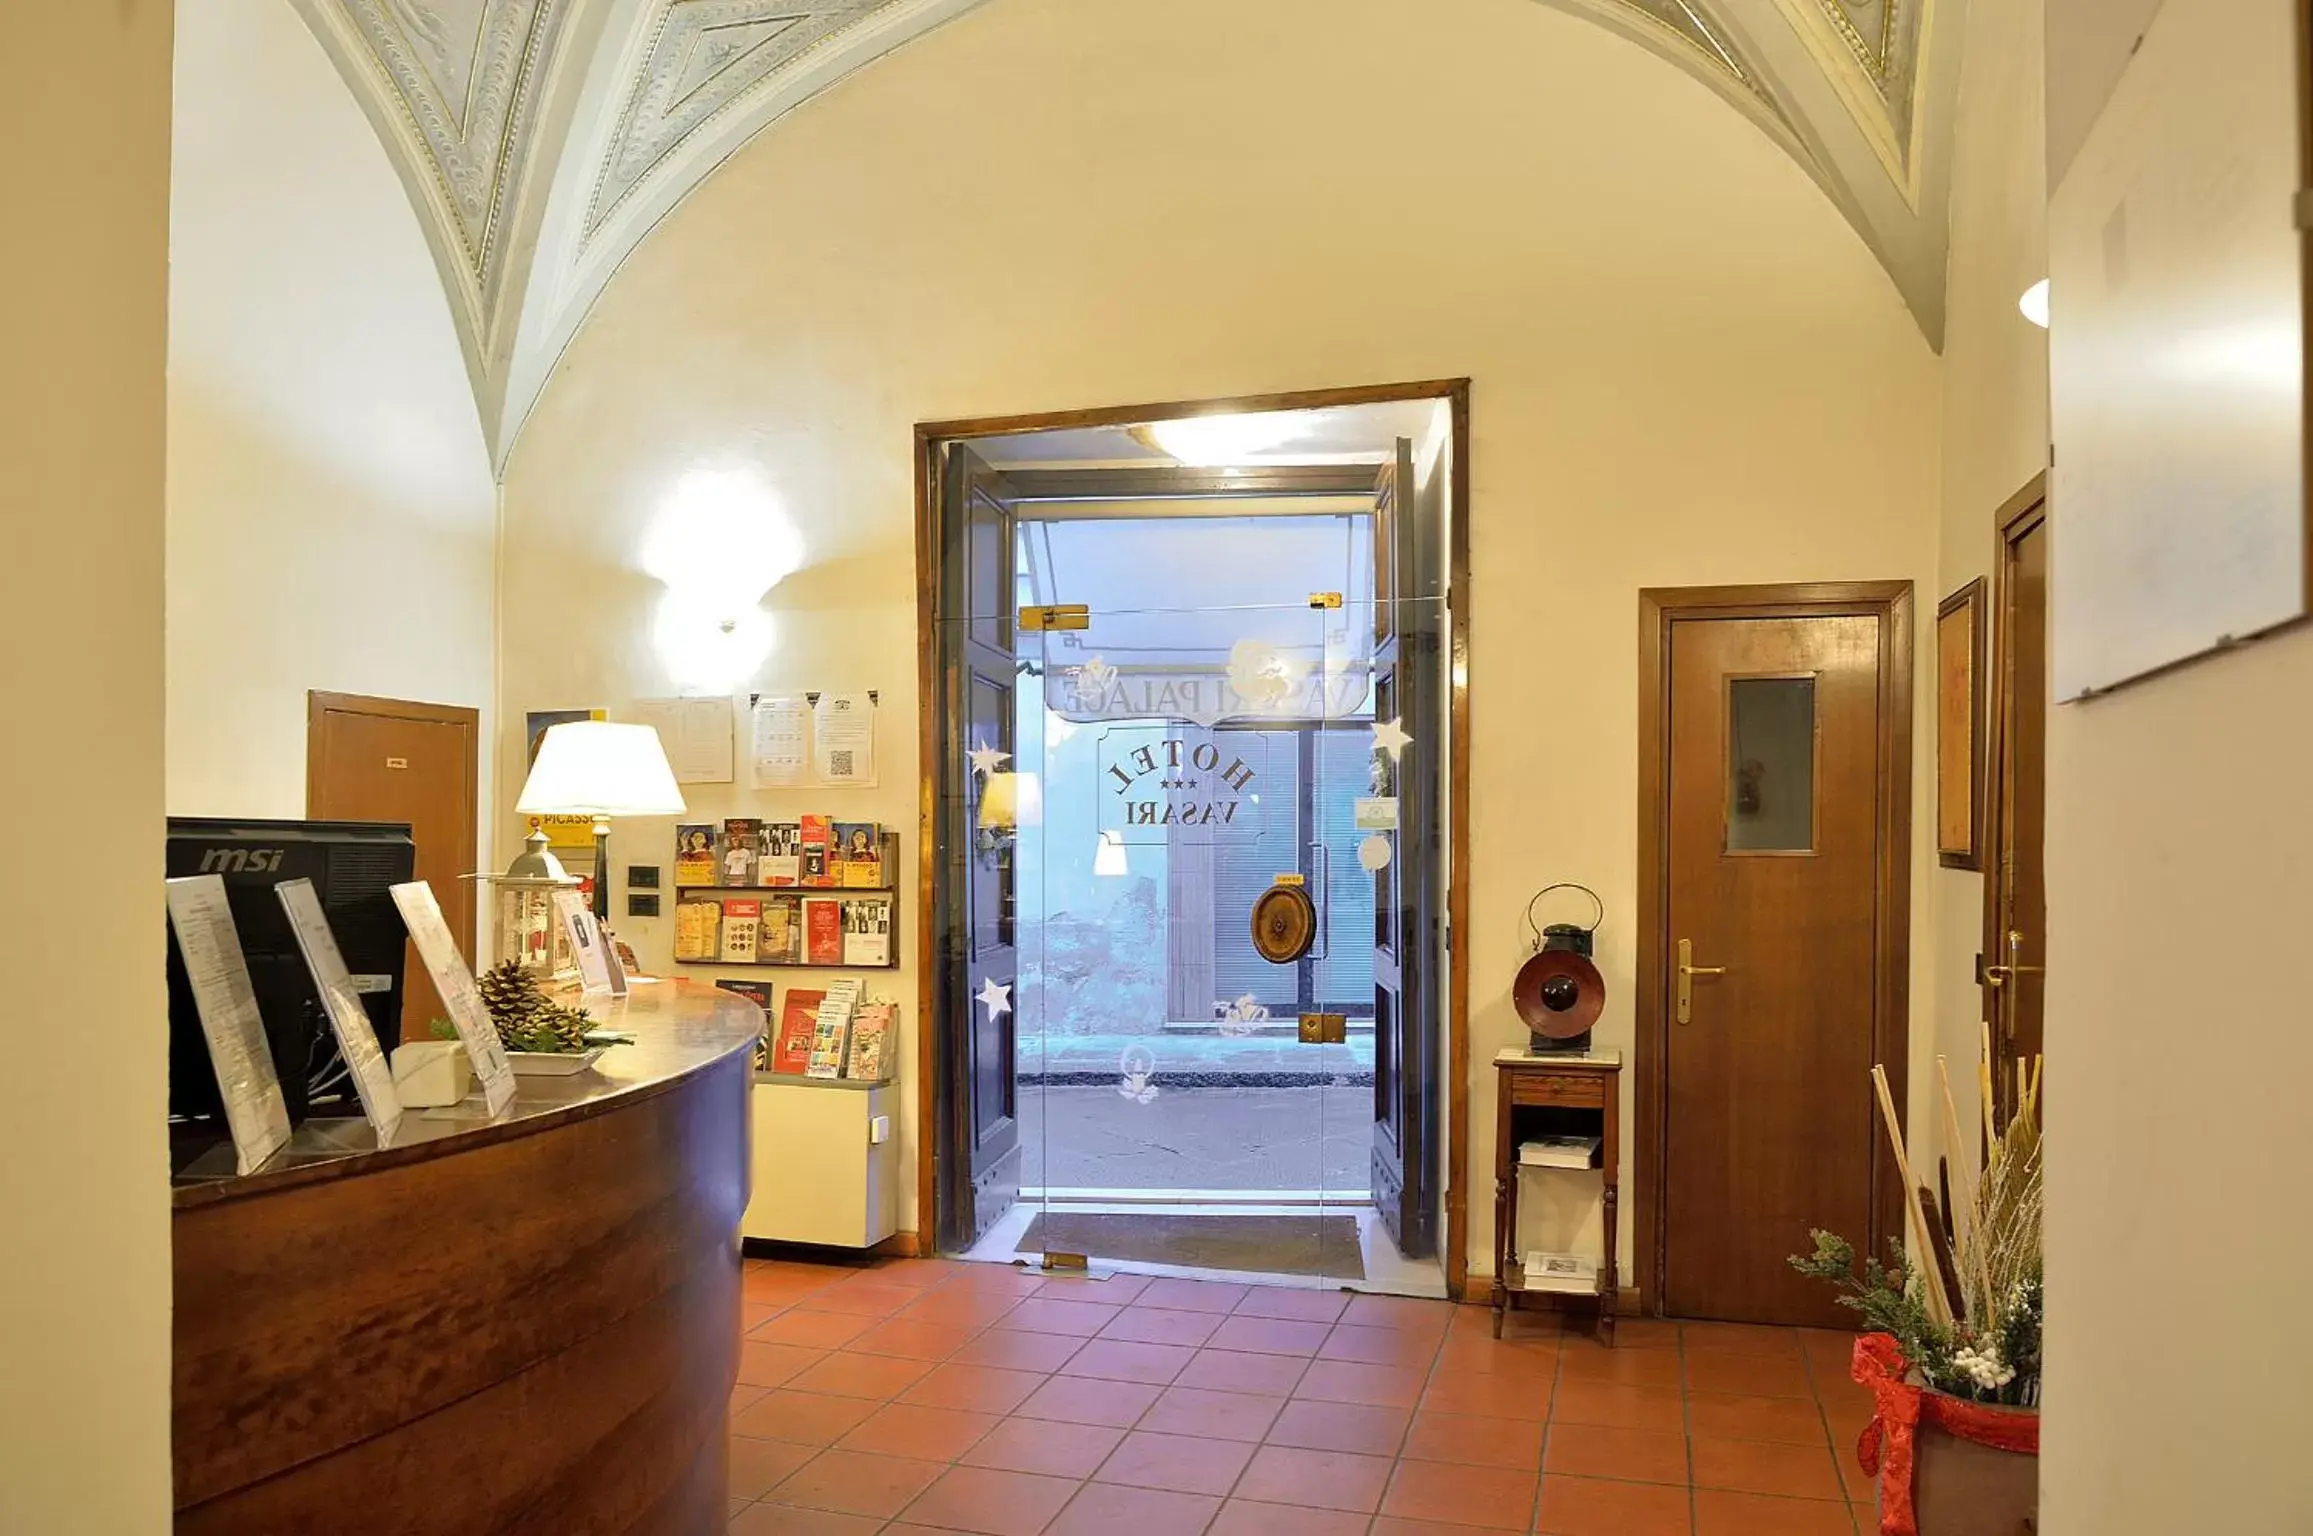 Lobby or reception, Facade/Entrance in Hotel Vasari